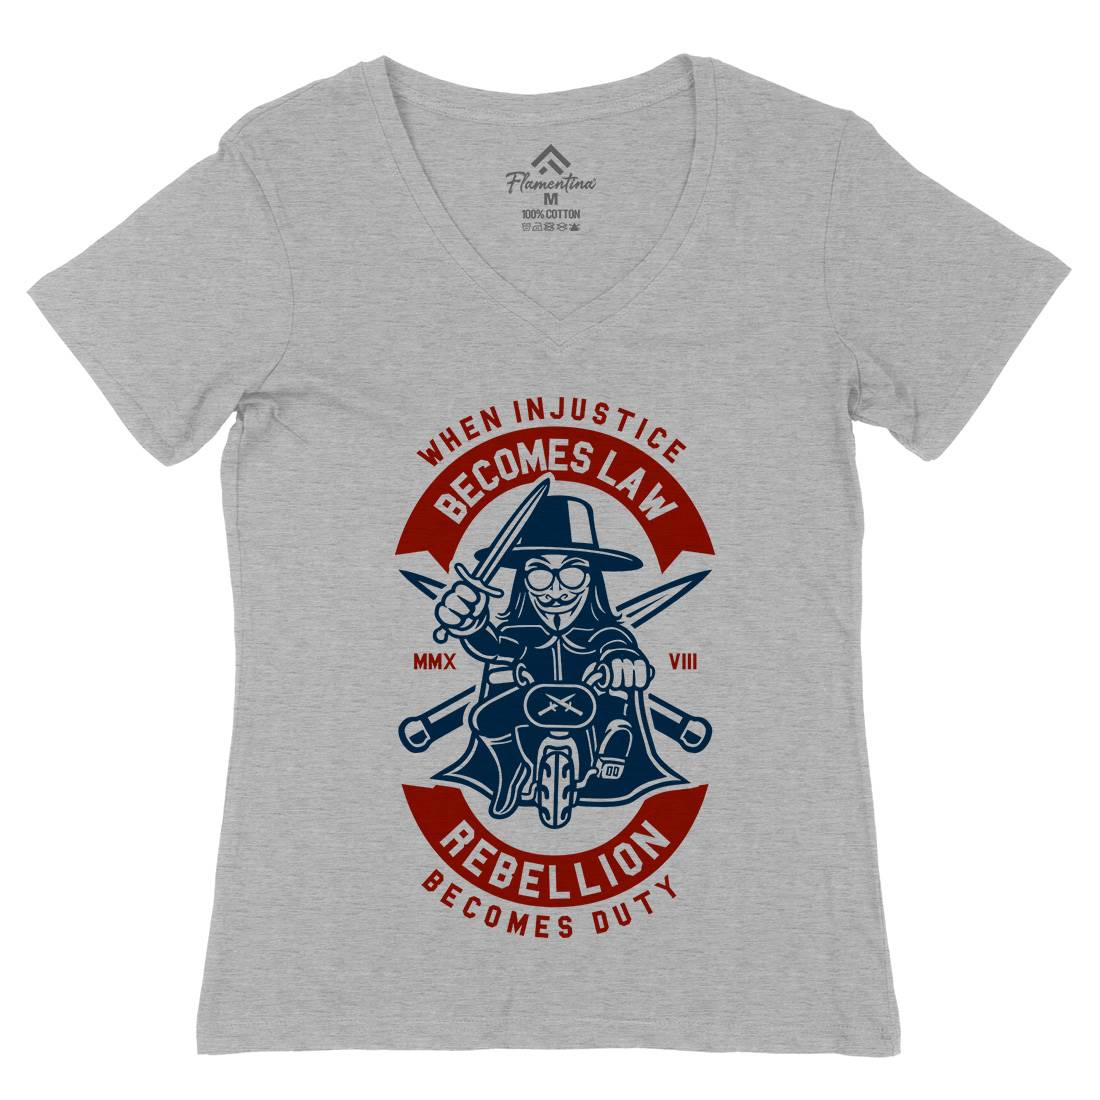 Rebellion Womens Organic V-Neck T-Shirt Illuminati A267